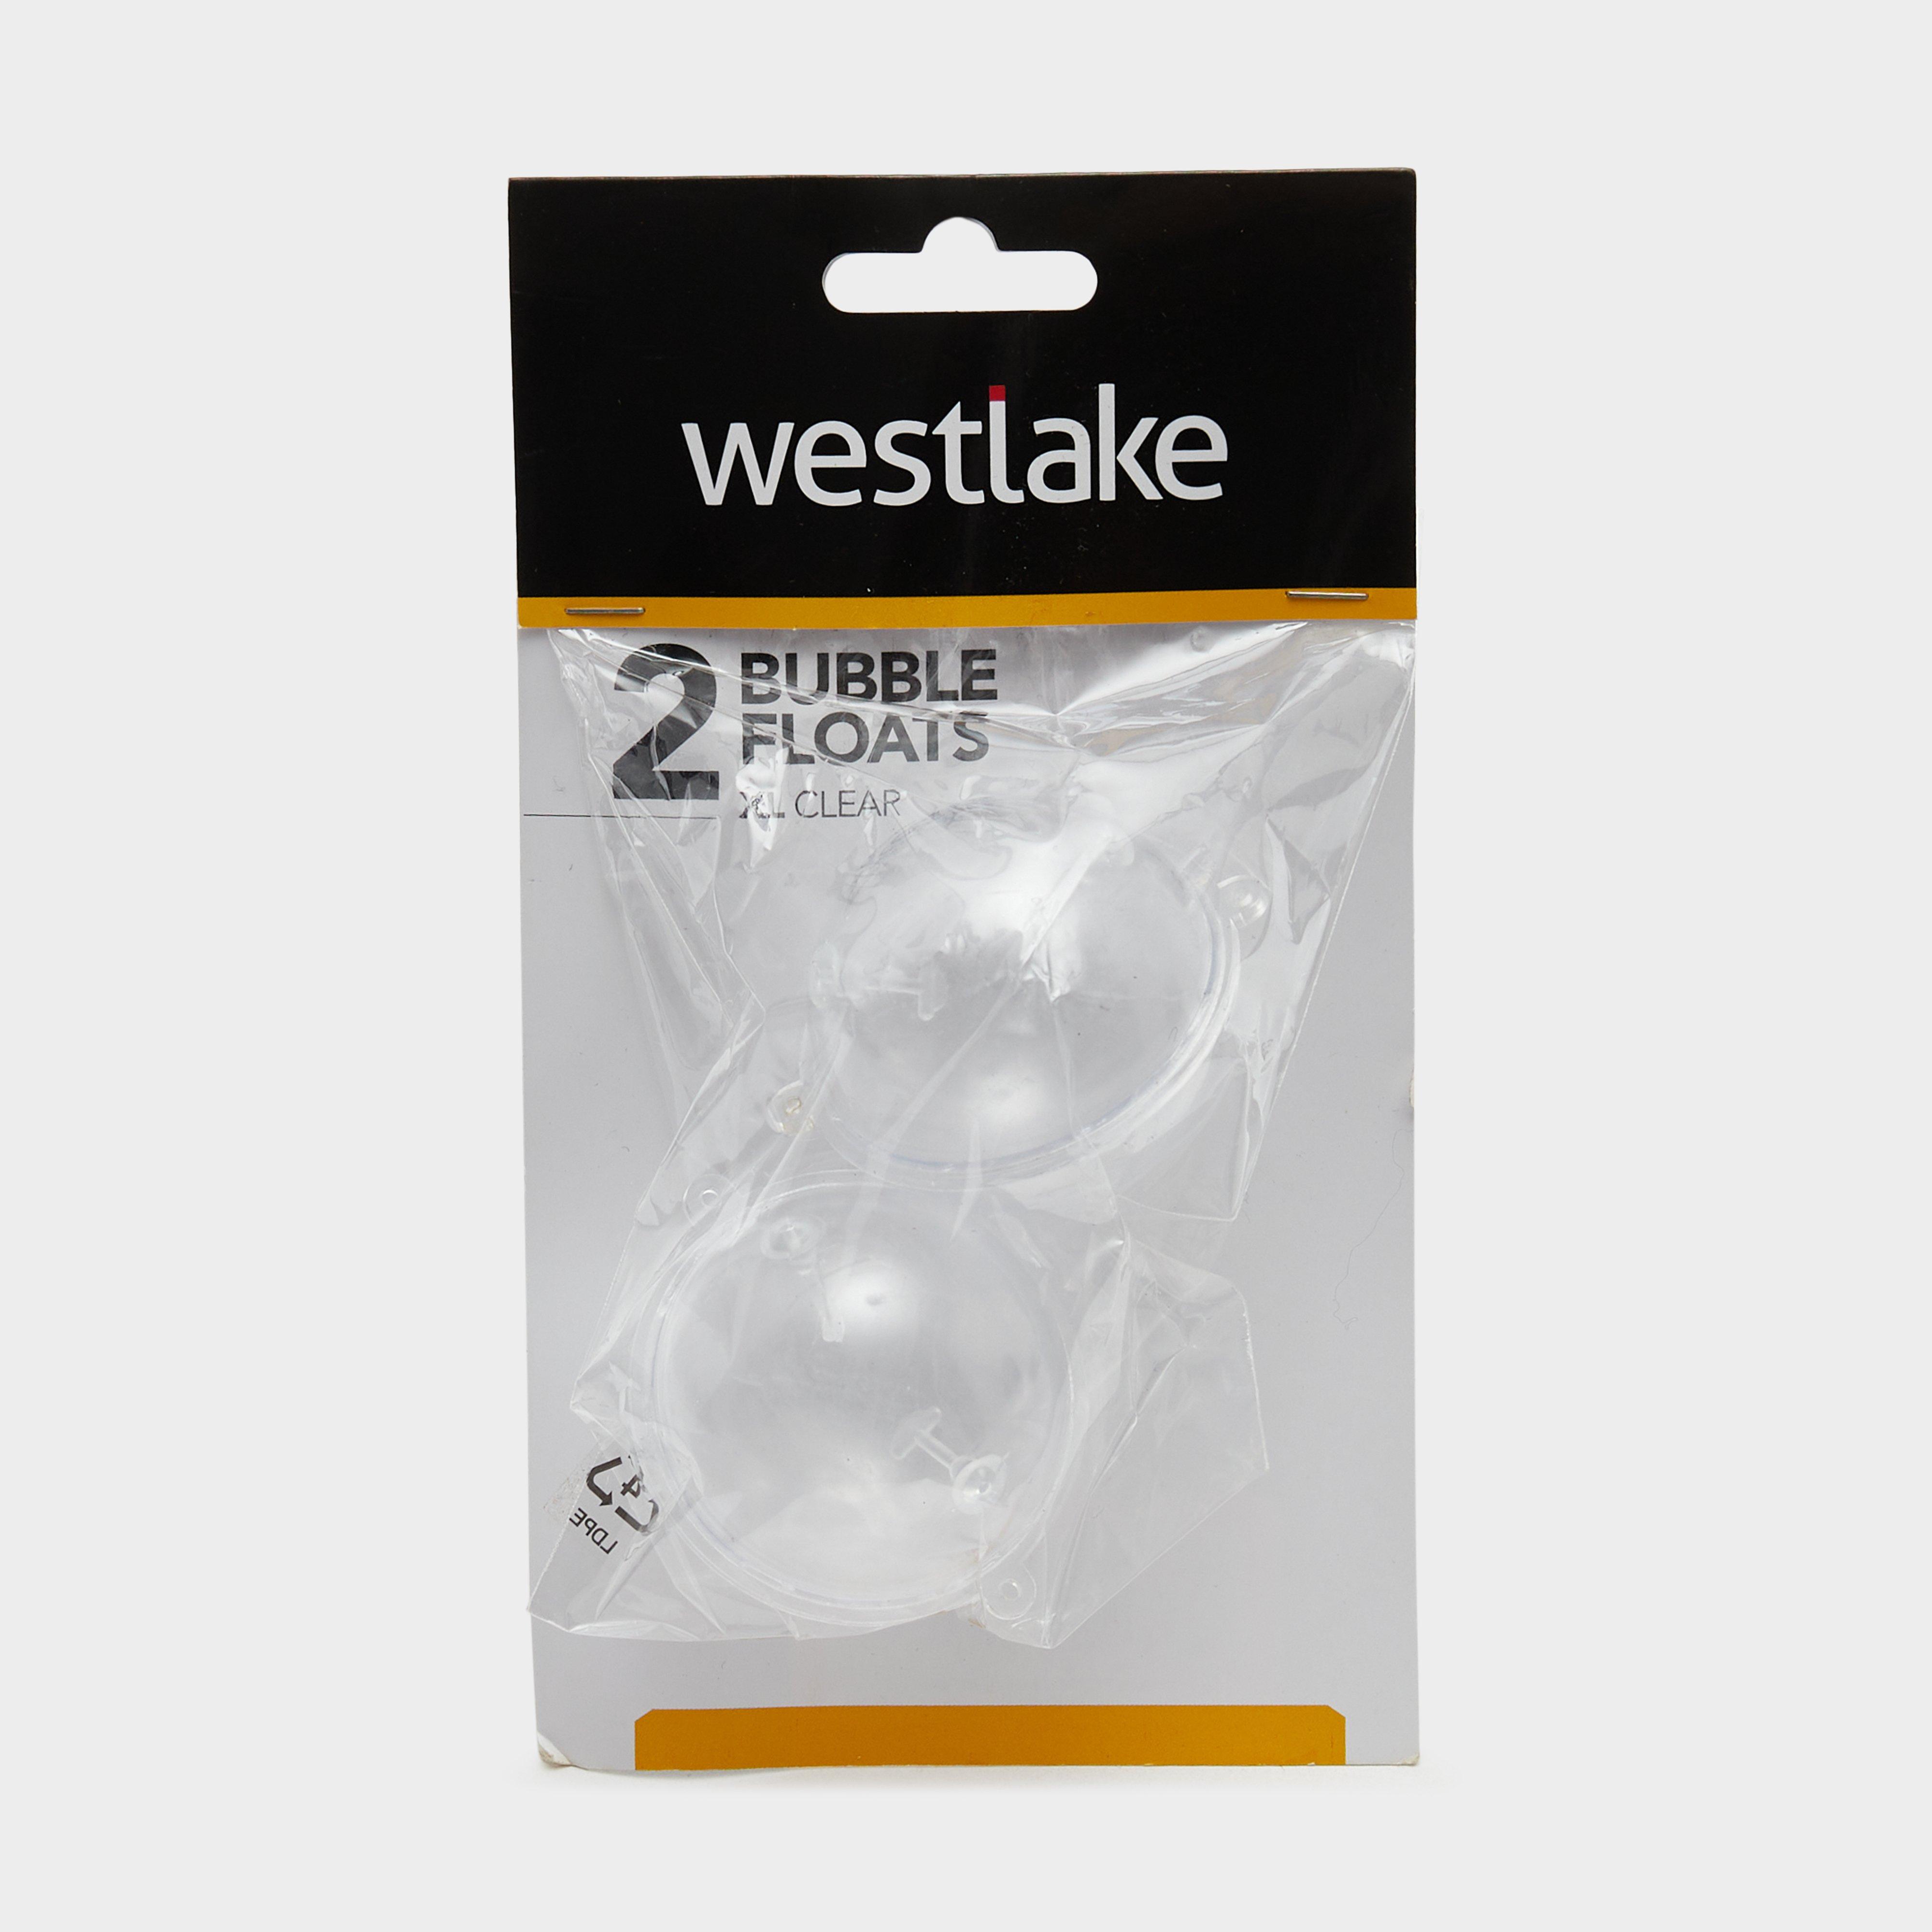 Westlake 2pk Bubble Float Xl Clear  Clear